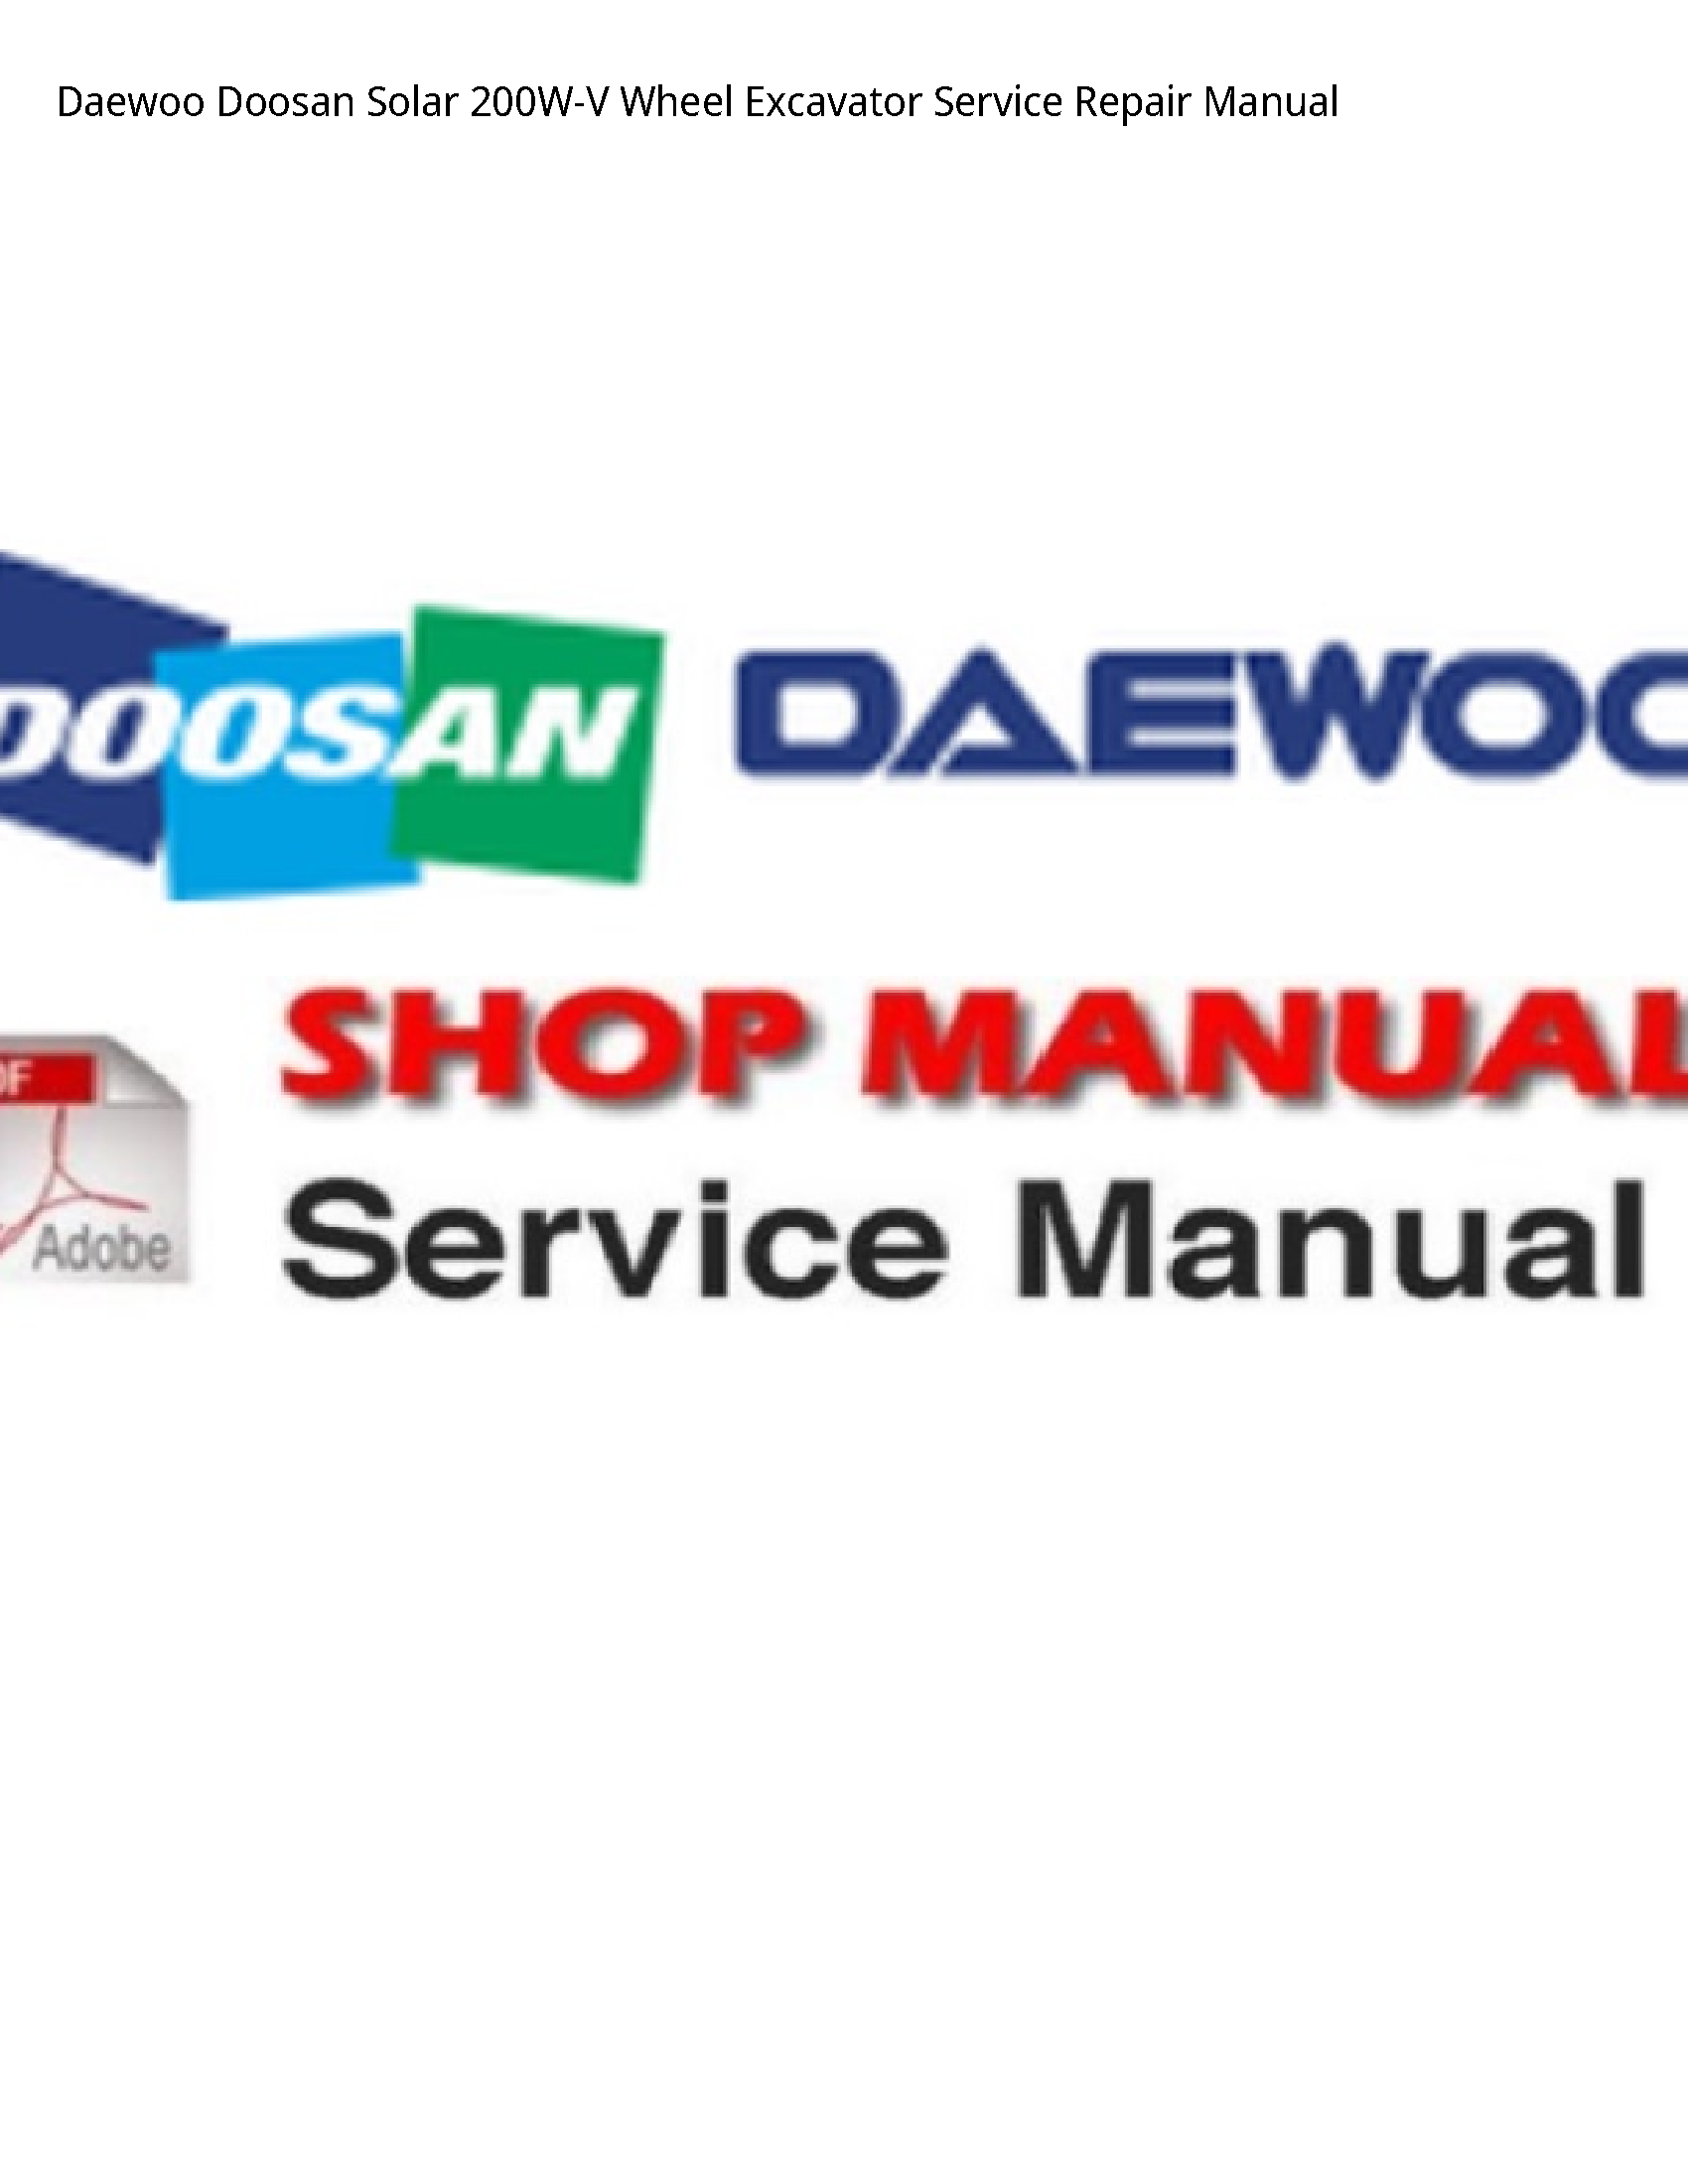 Daewoo Doosan 200W-V Solar Wheel Excavator manual